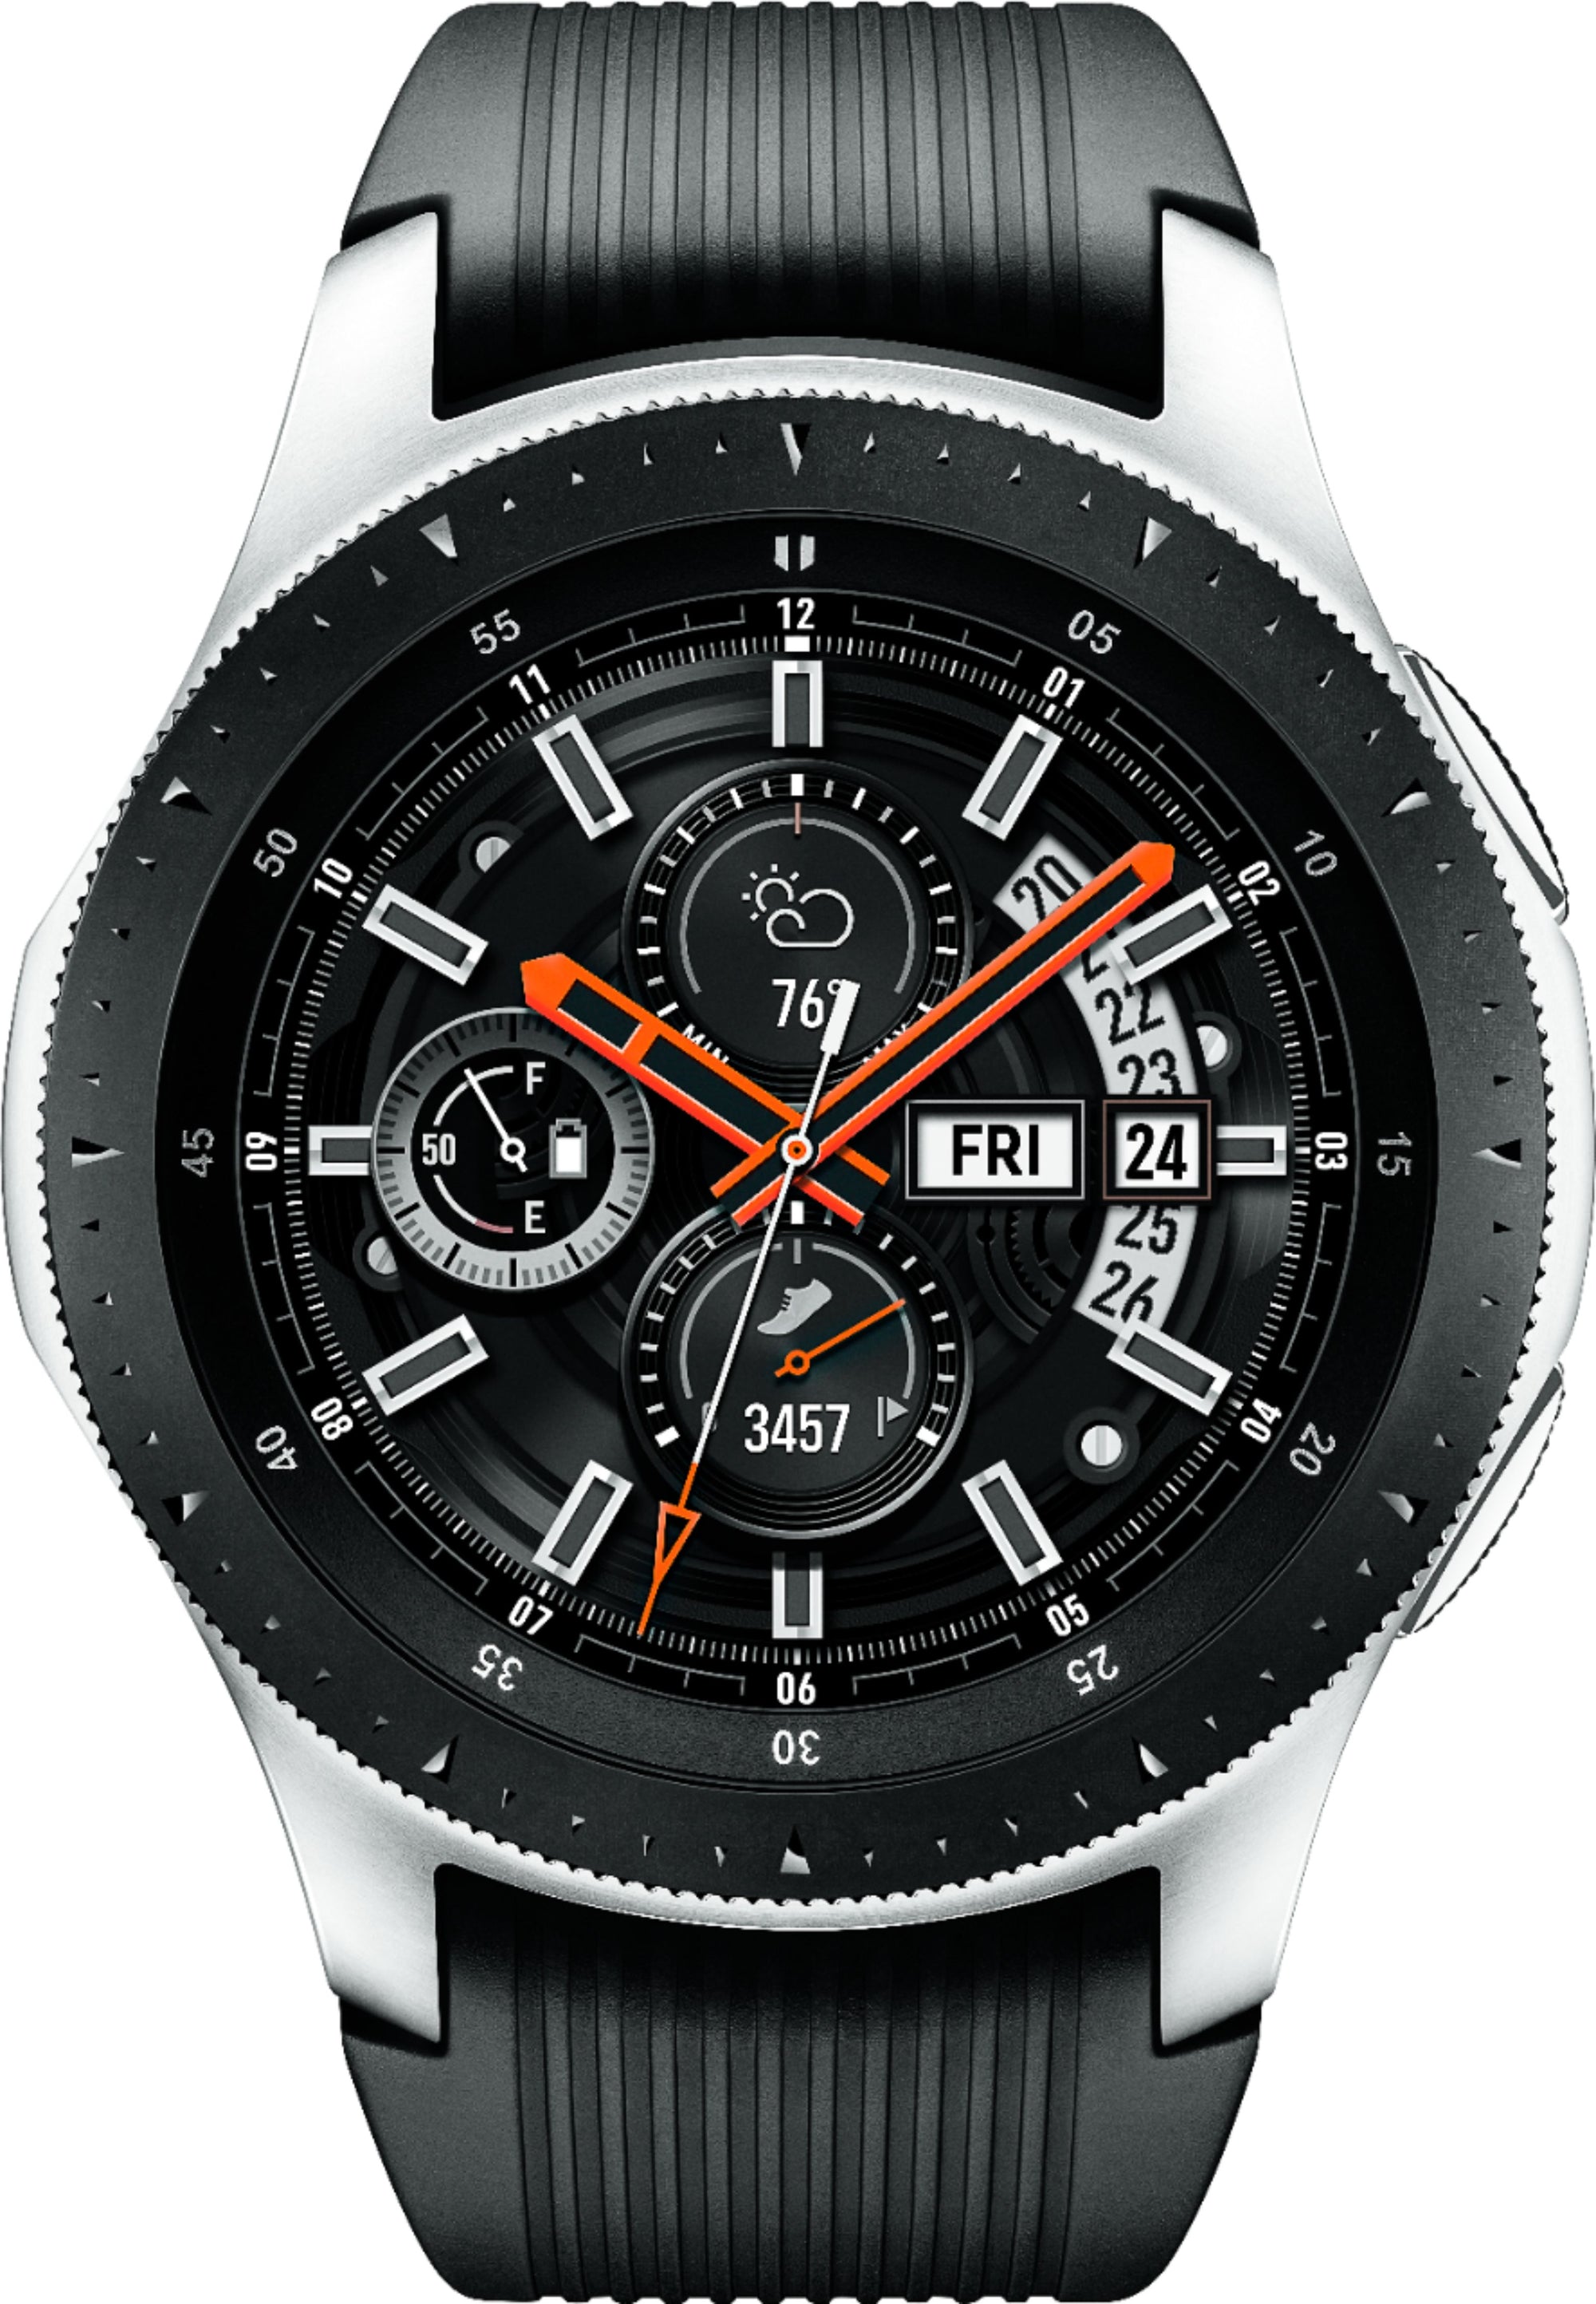 Samsung - GSRF SM-R800NZSAXAR  Geek Squad Certified Refurbished Galaxy Watch Smartwatch 46mm Stainless Steel - Silver